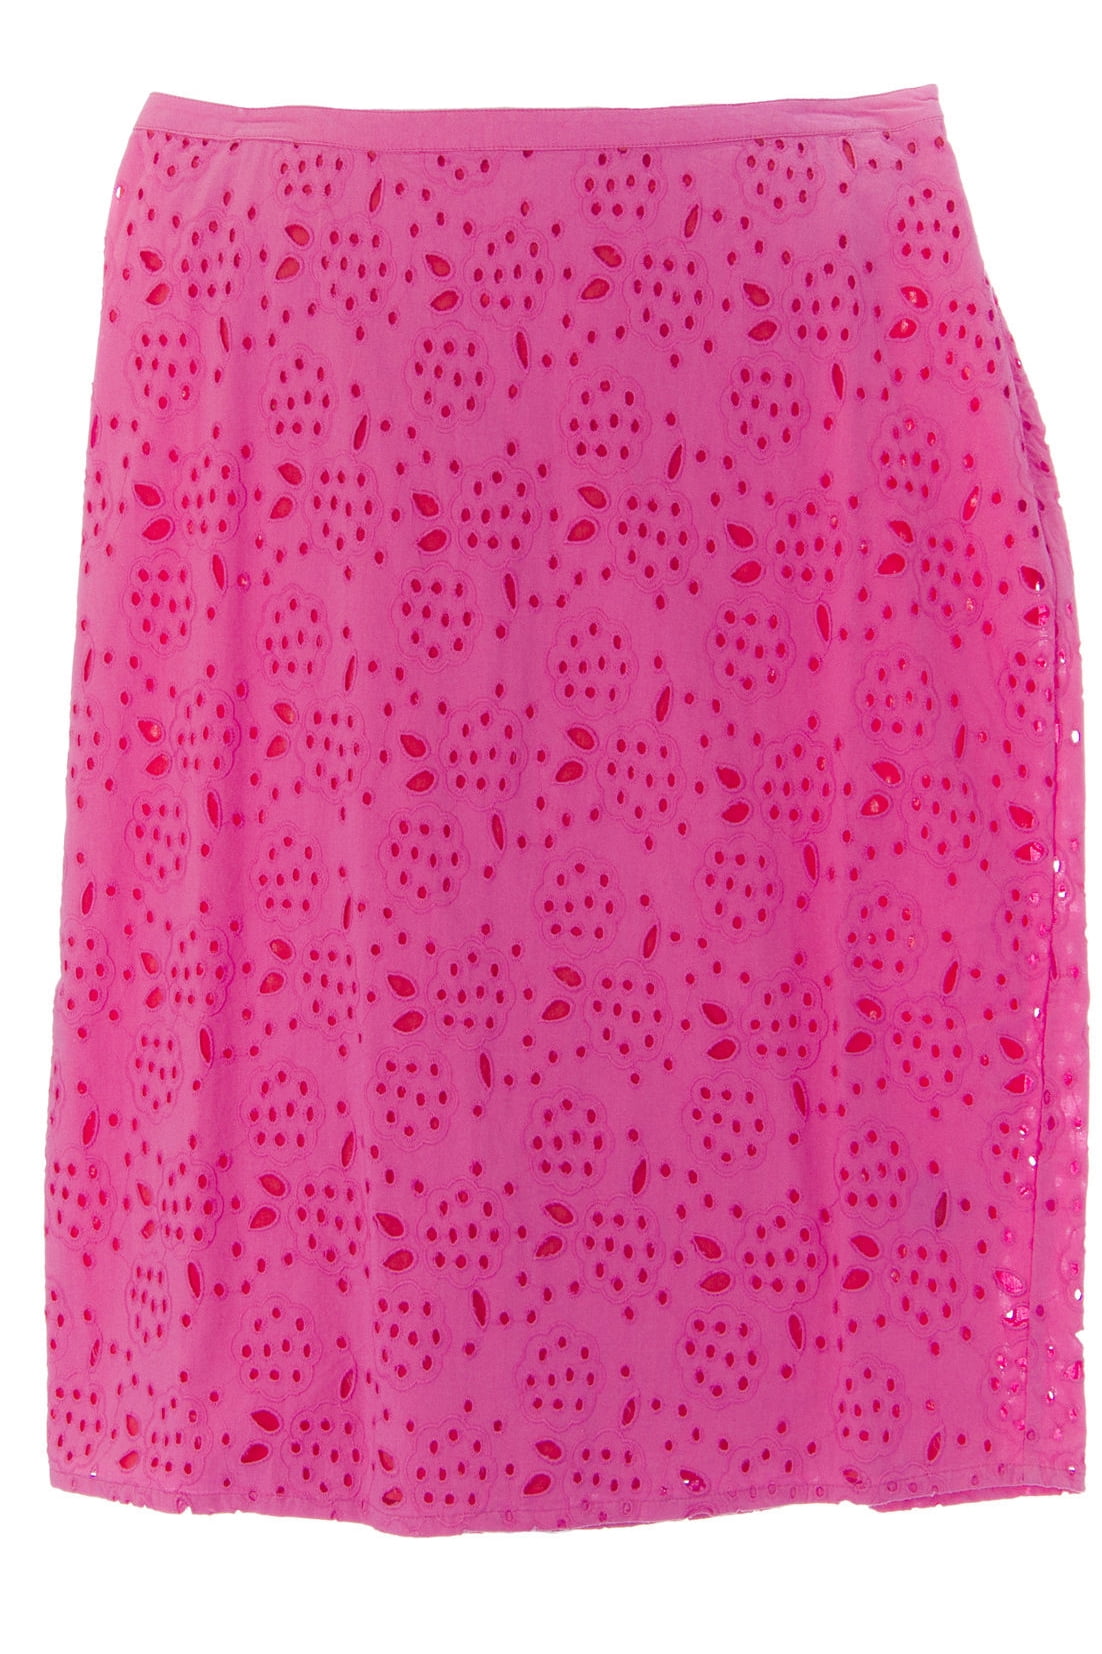 BODEN Women's Broderie Pencil Skirt, Pink, US 4R - Walmart.com